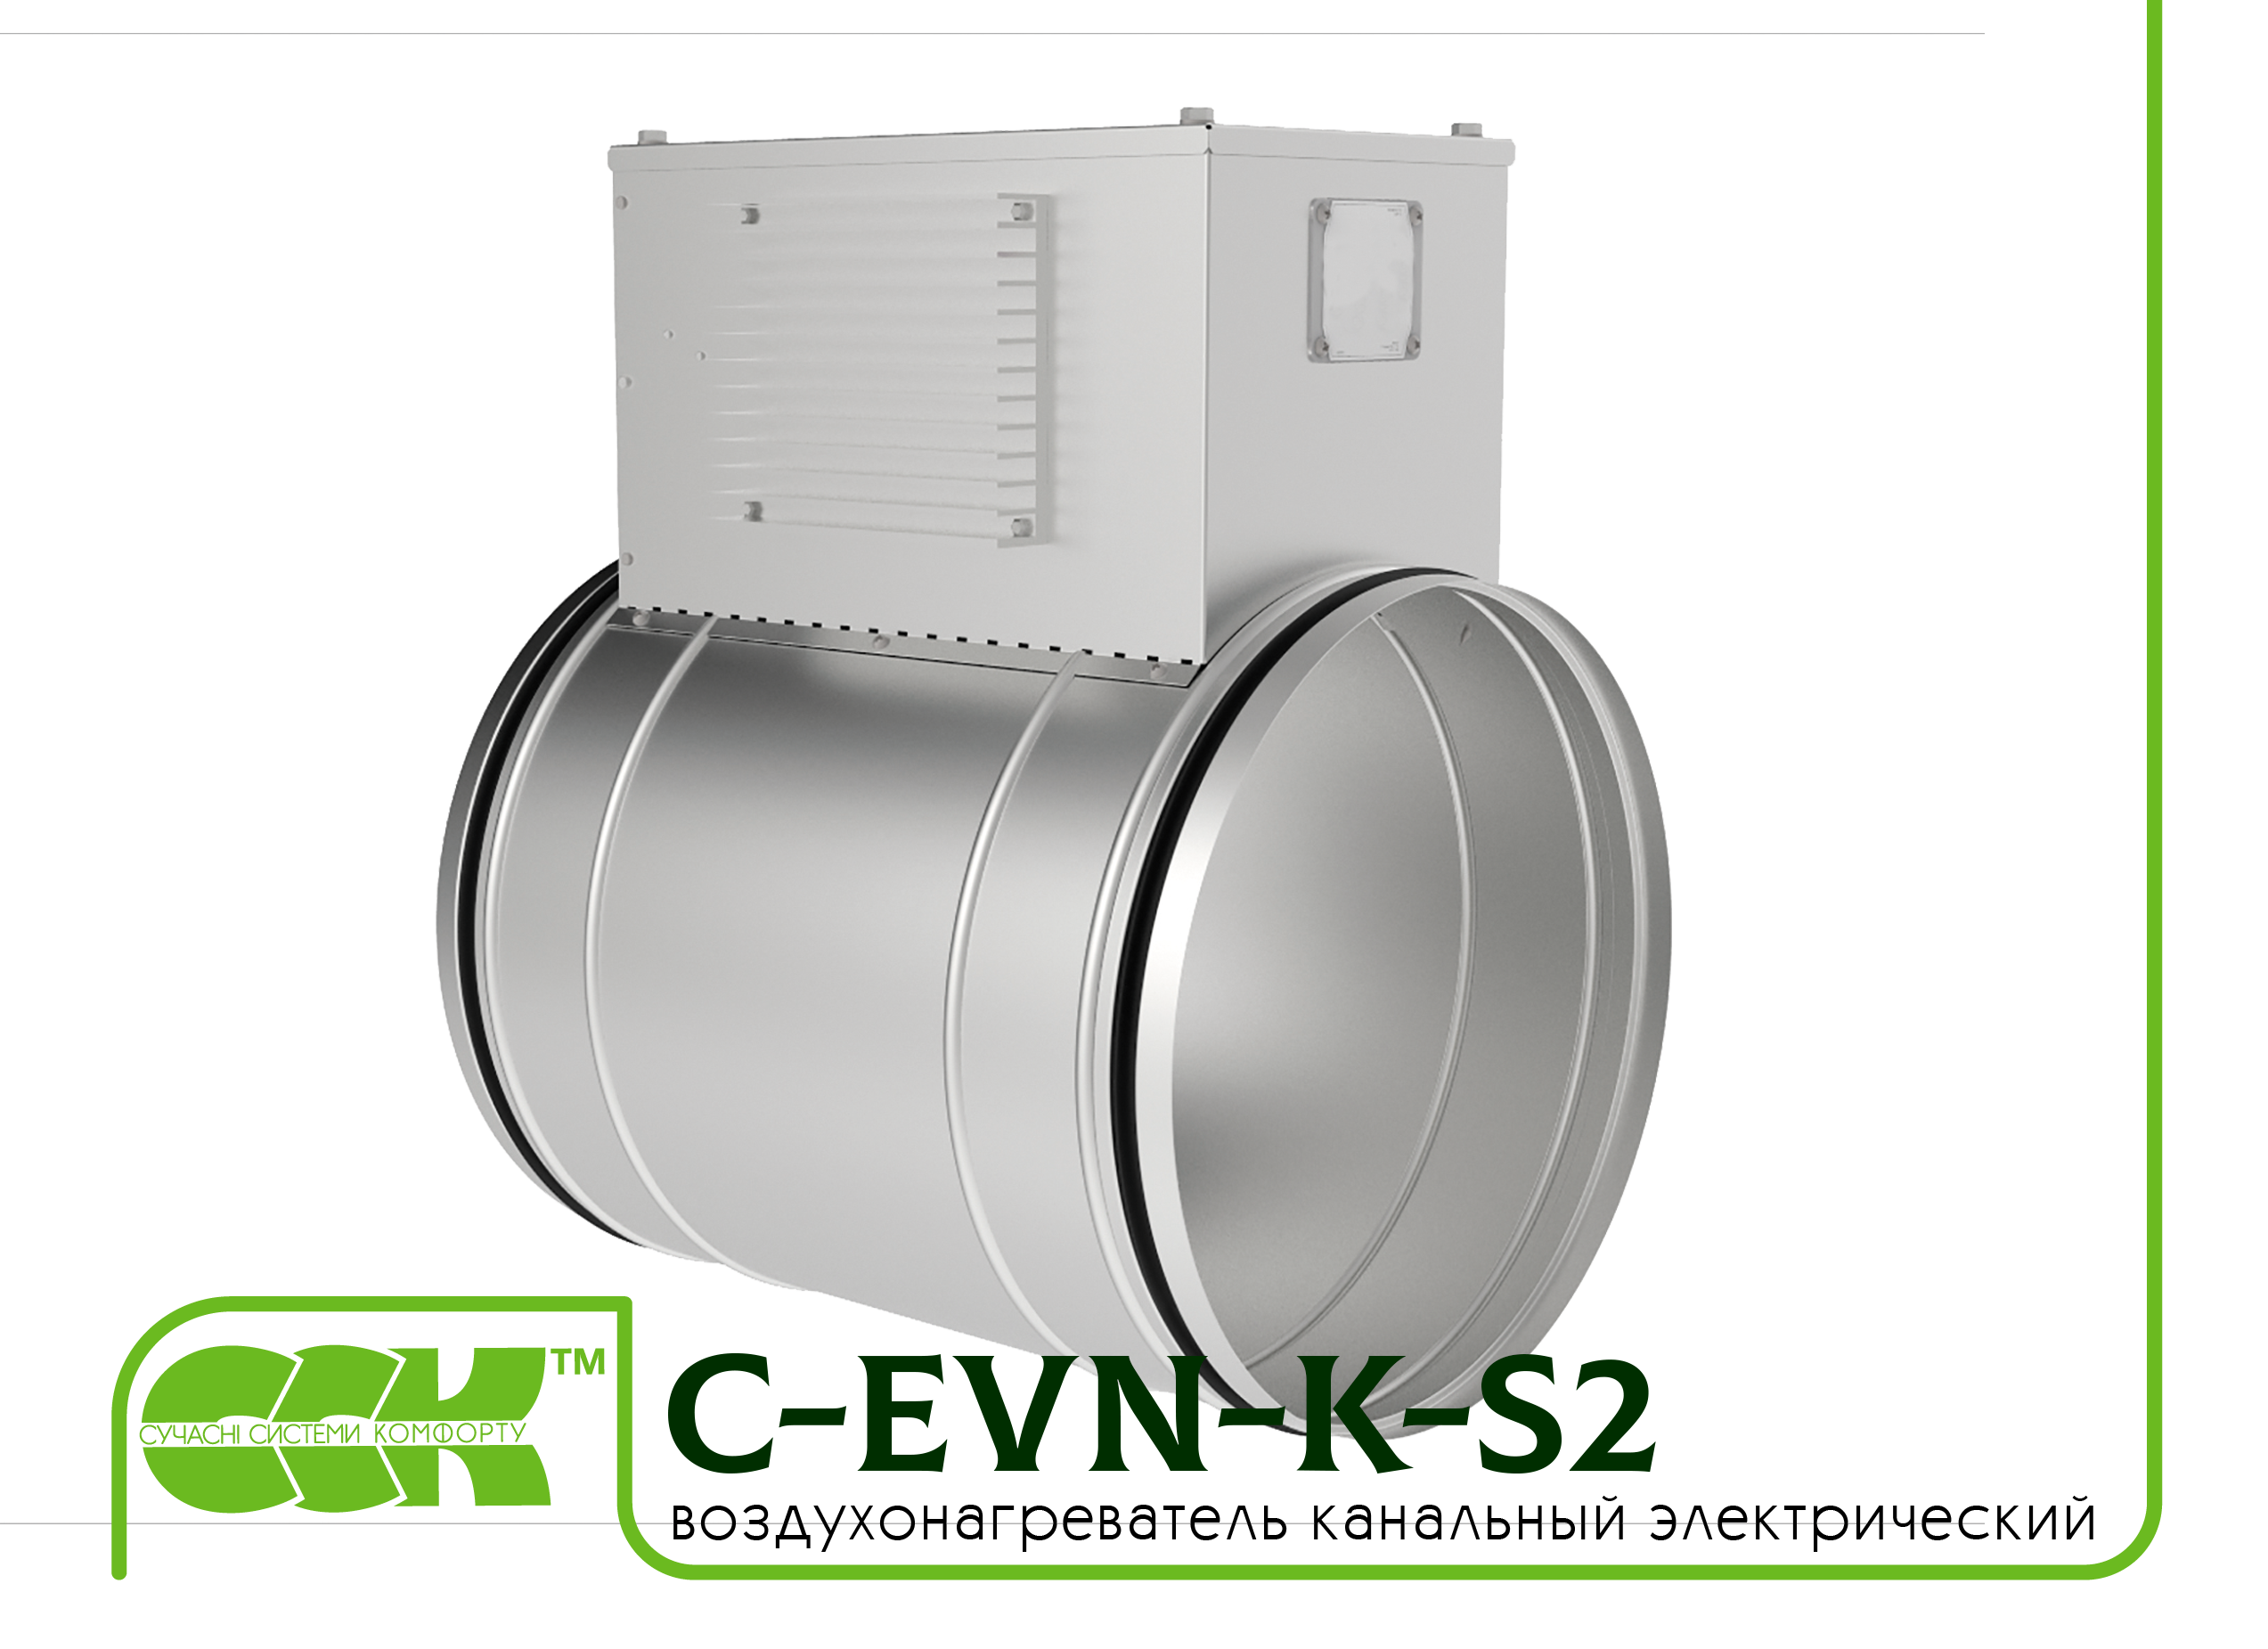 Воздухонагреватель канальный электрический для круглых каналов C-EVN-K-S2-150-6,0